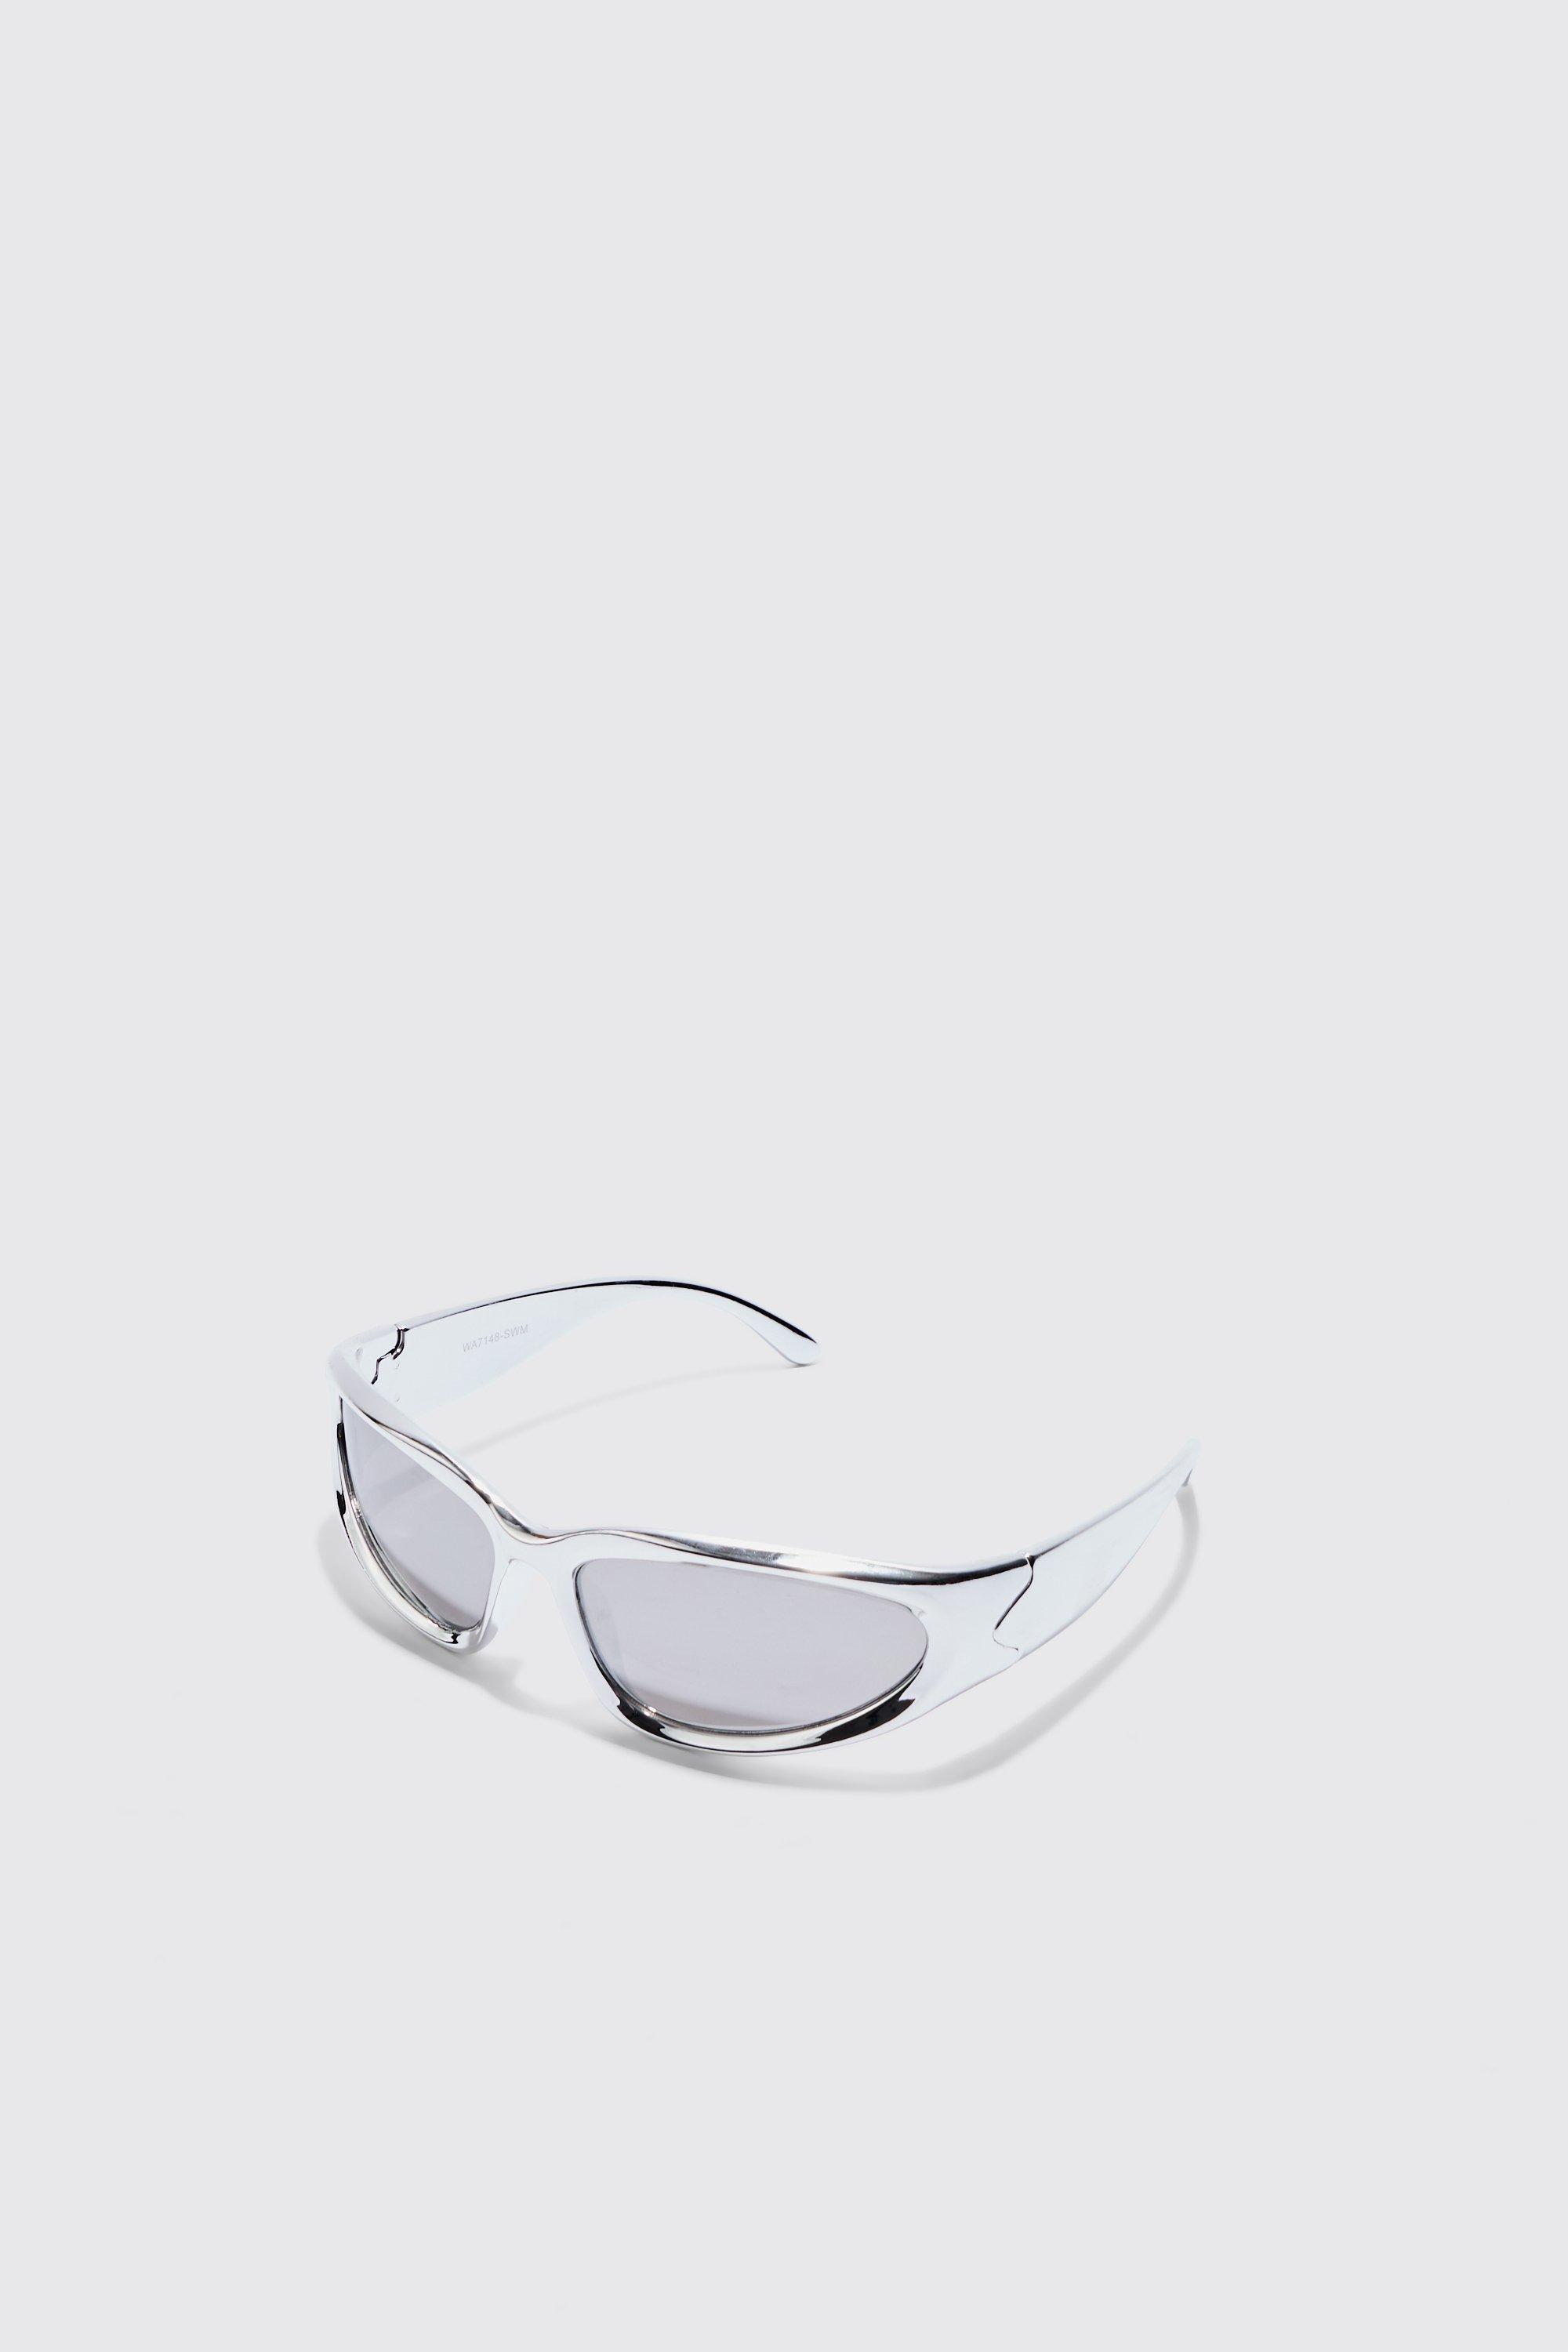 Image of Wrap Around Sunglasses In Silver, Grigio